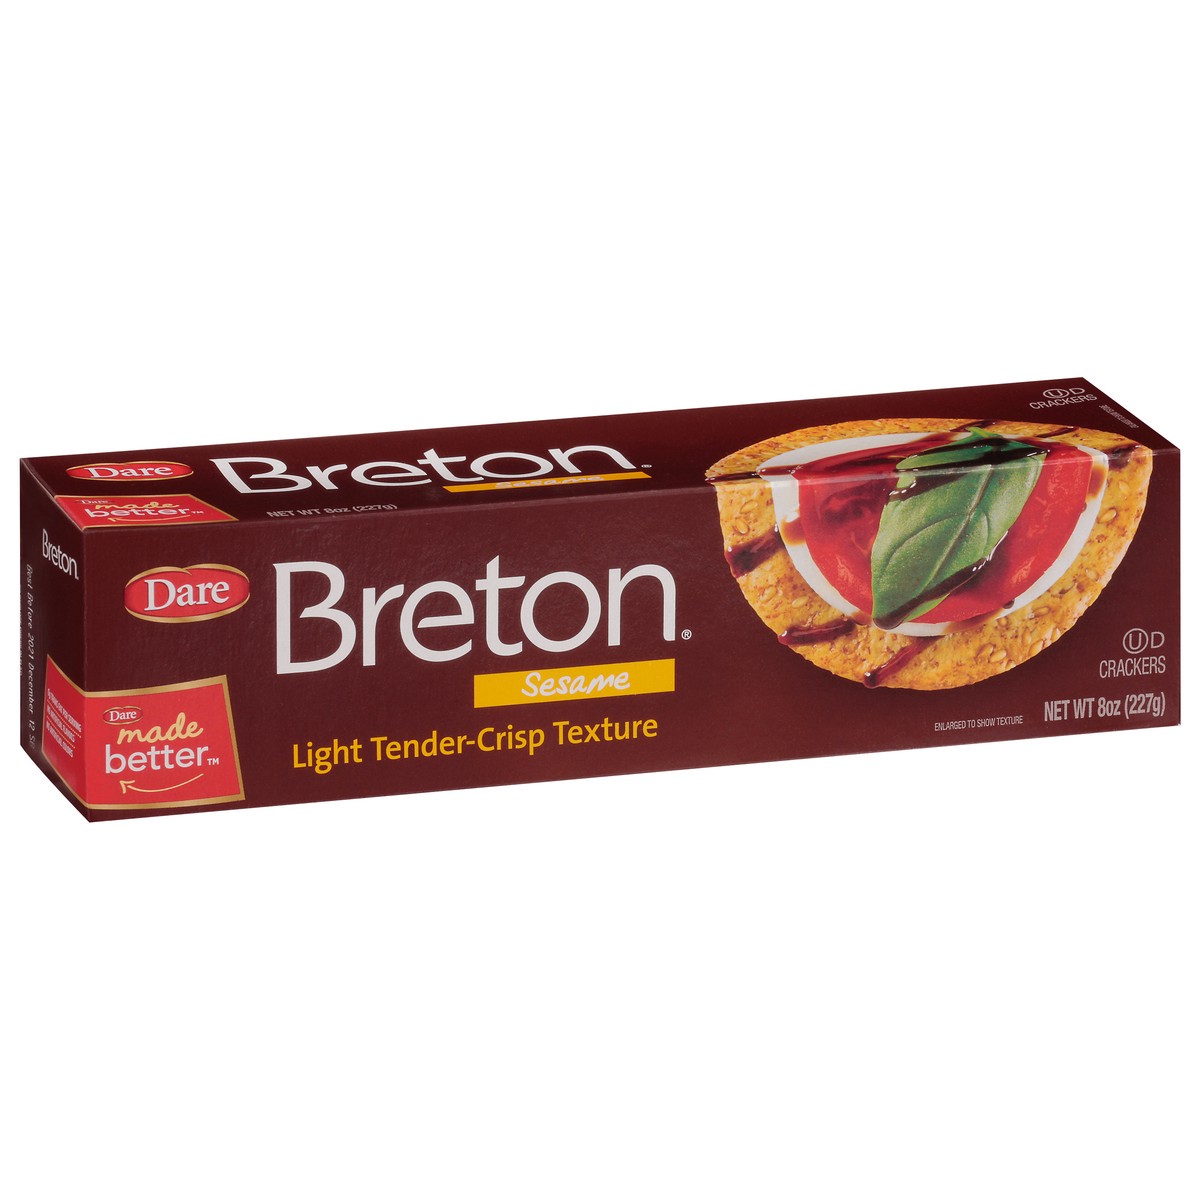 slide 12 of 14, Dare Breton Sesame Crackers, 8 oz